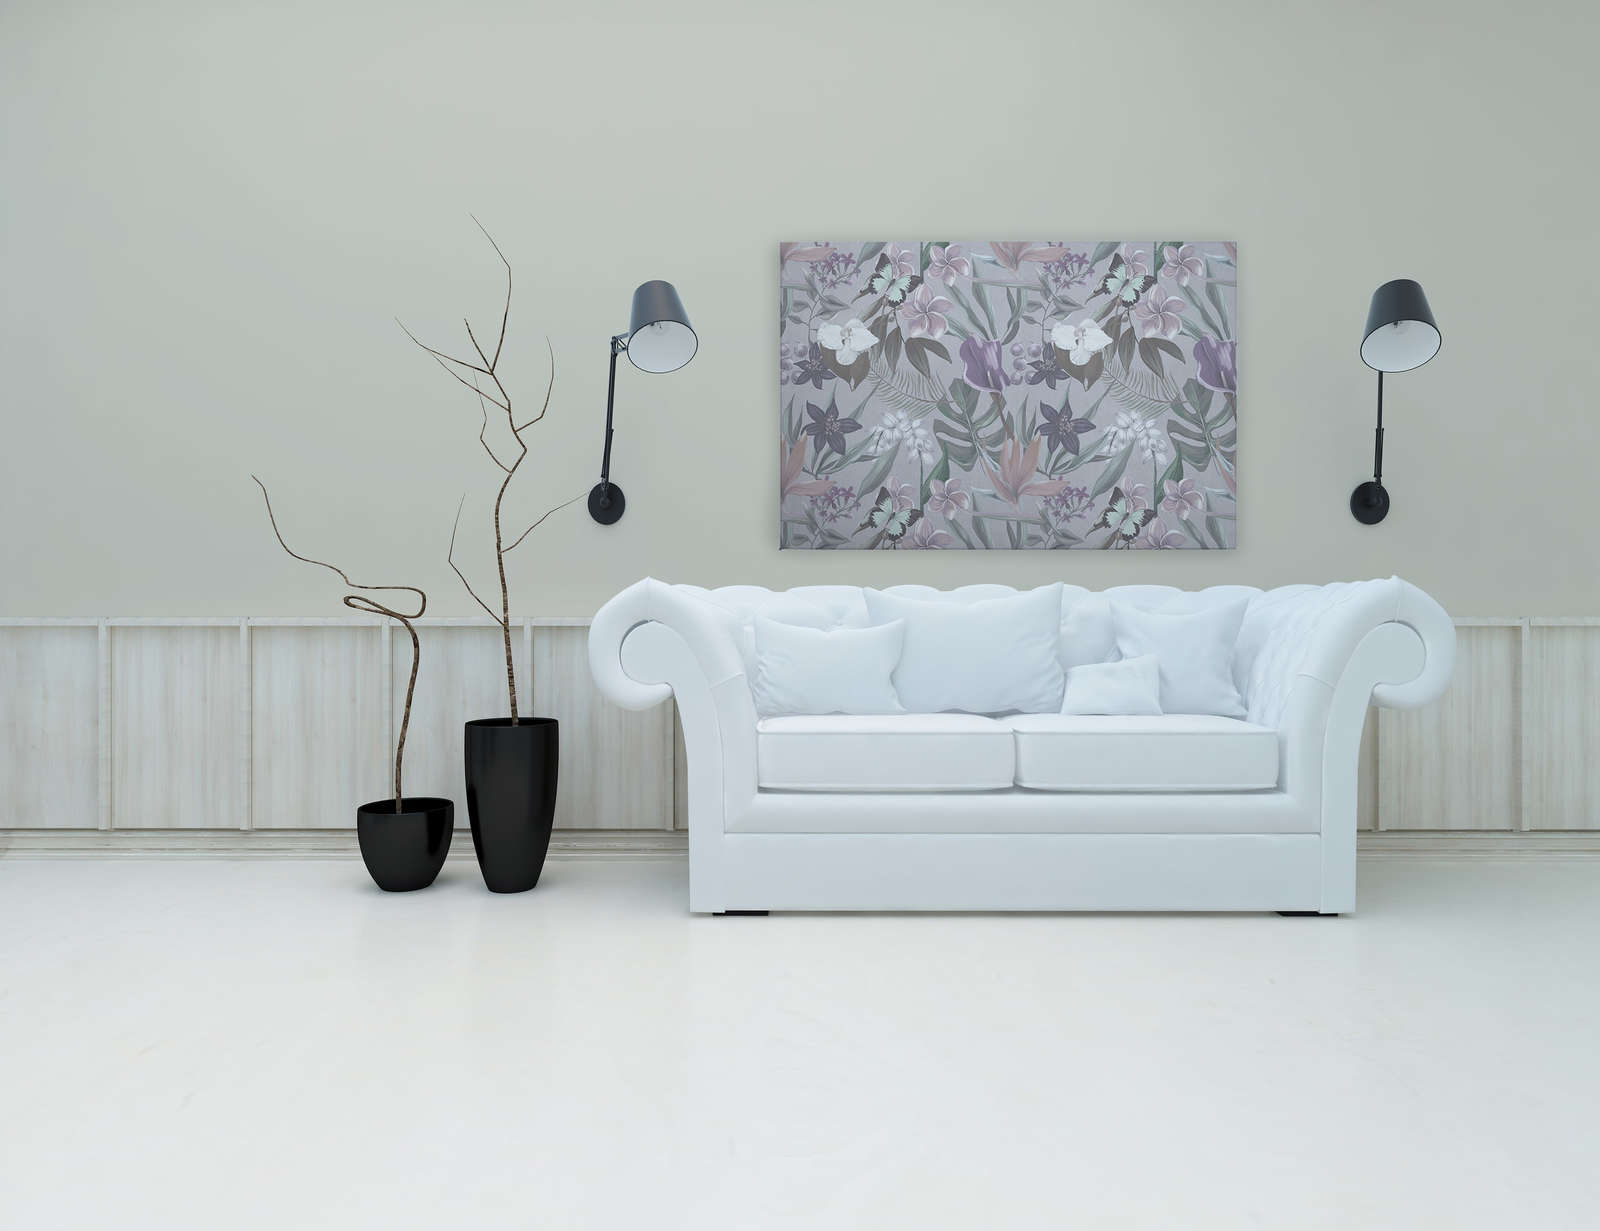             Florales Dschungel Leinwandbild gezeichnet | rosa, weiß – 1,20 m x 0,80 m
        